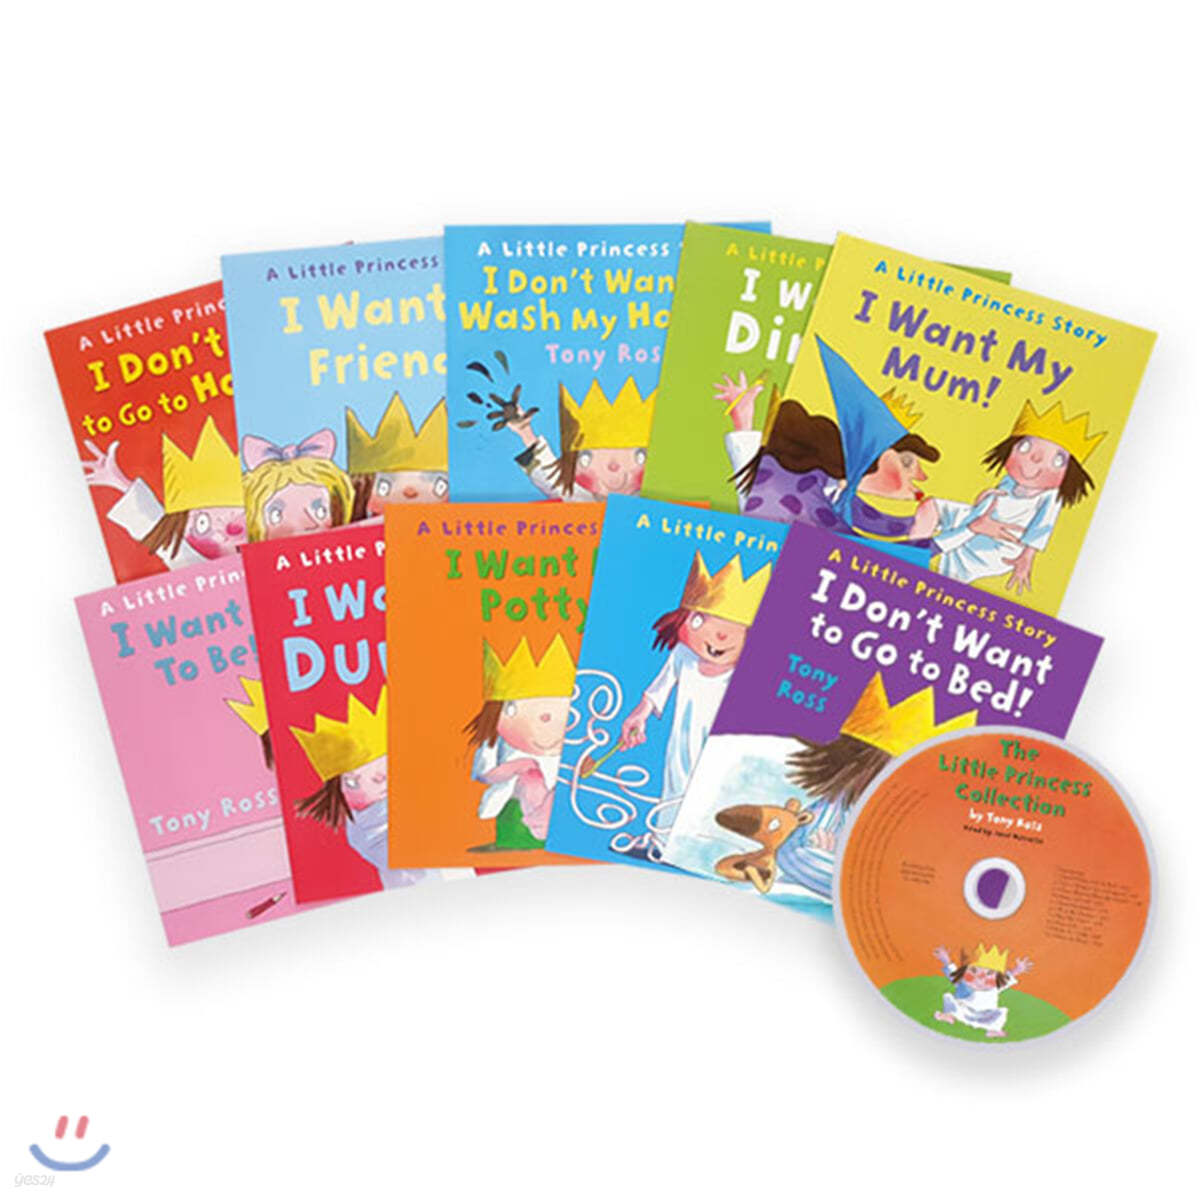 리틀 프린세스 원서 &amp; CD 세트 : Little Princess 10 Books + CD Set